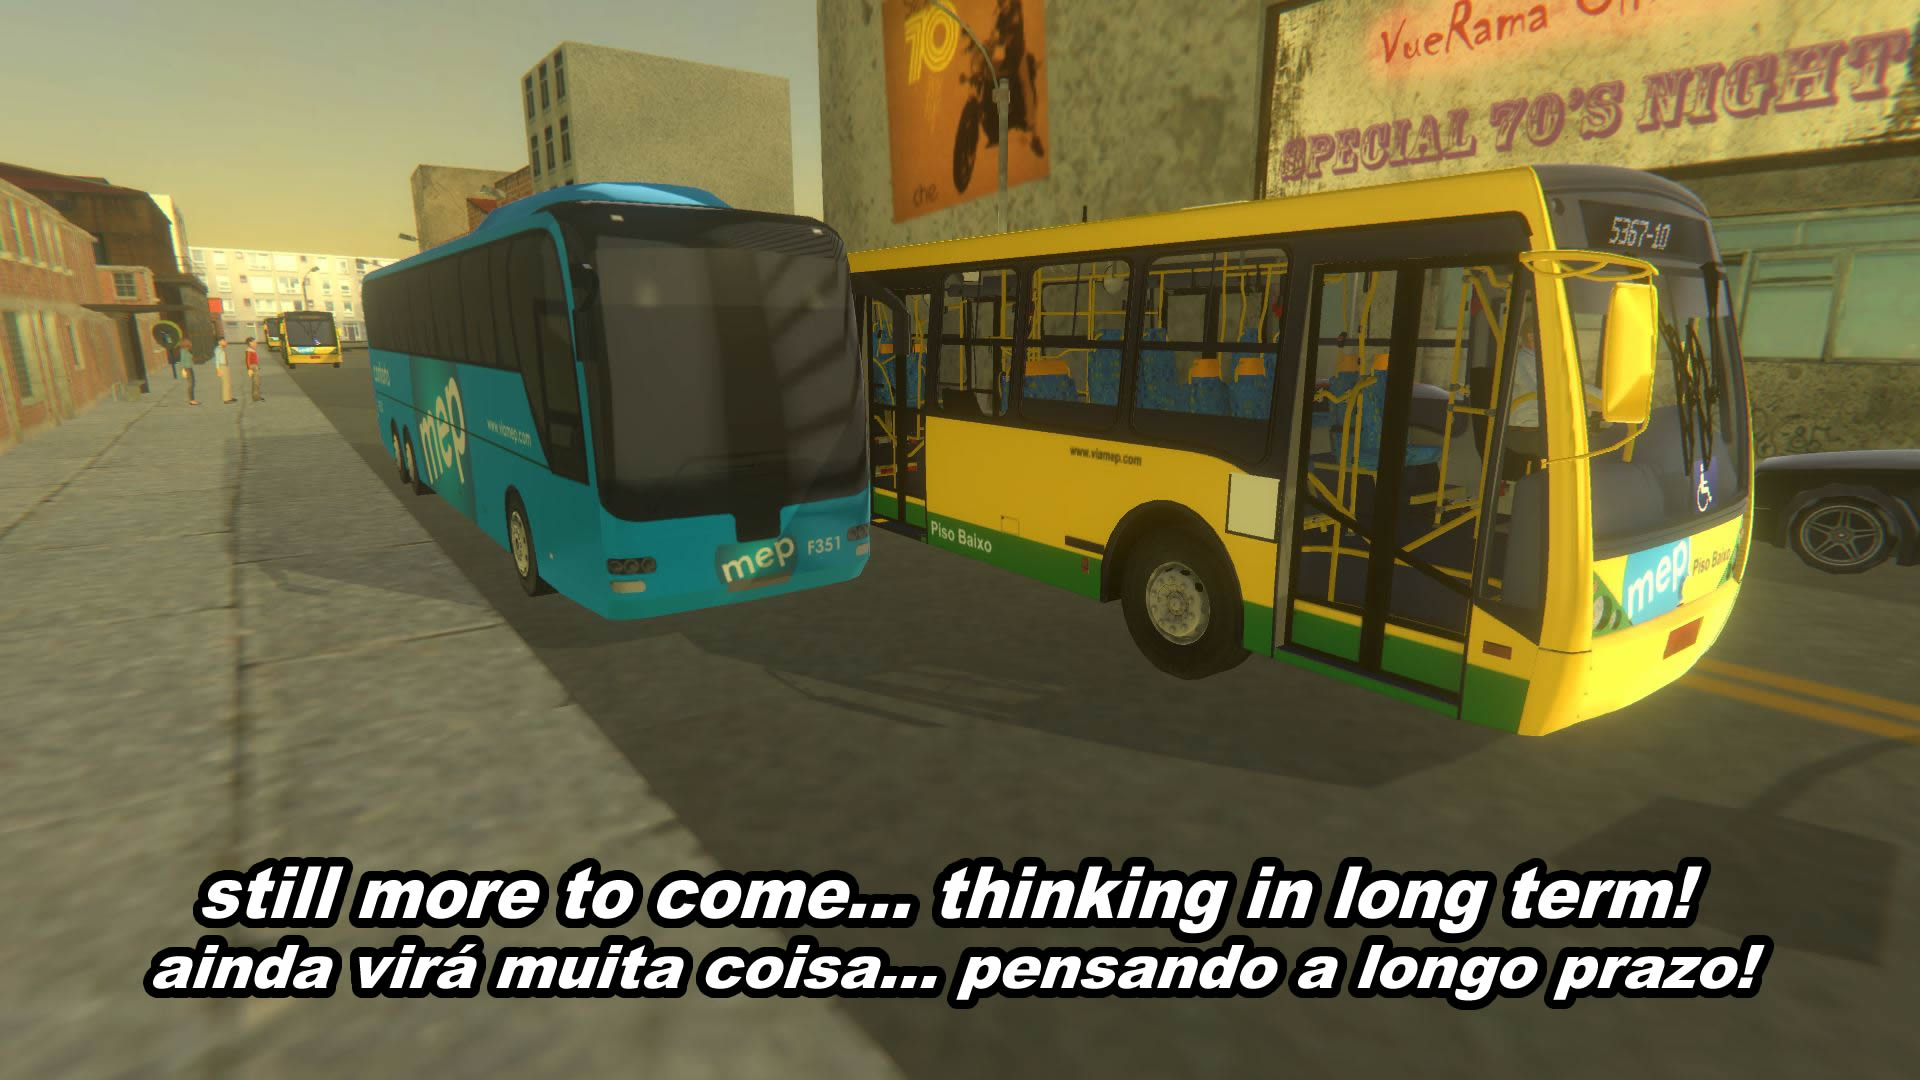 Proton Bus Simulator Core V299 